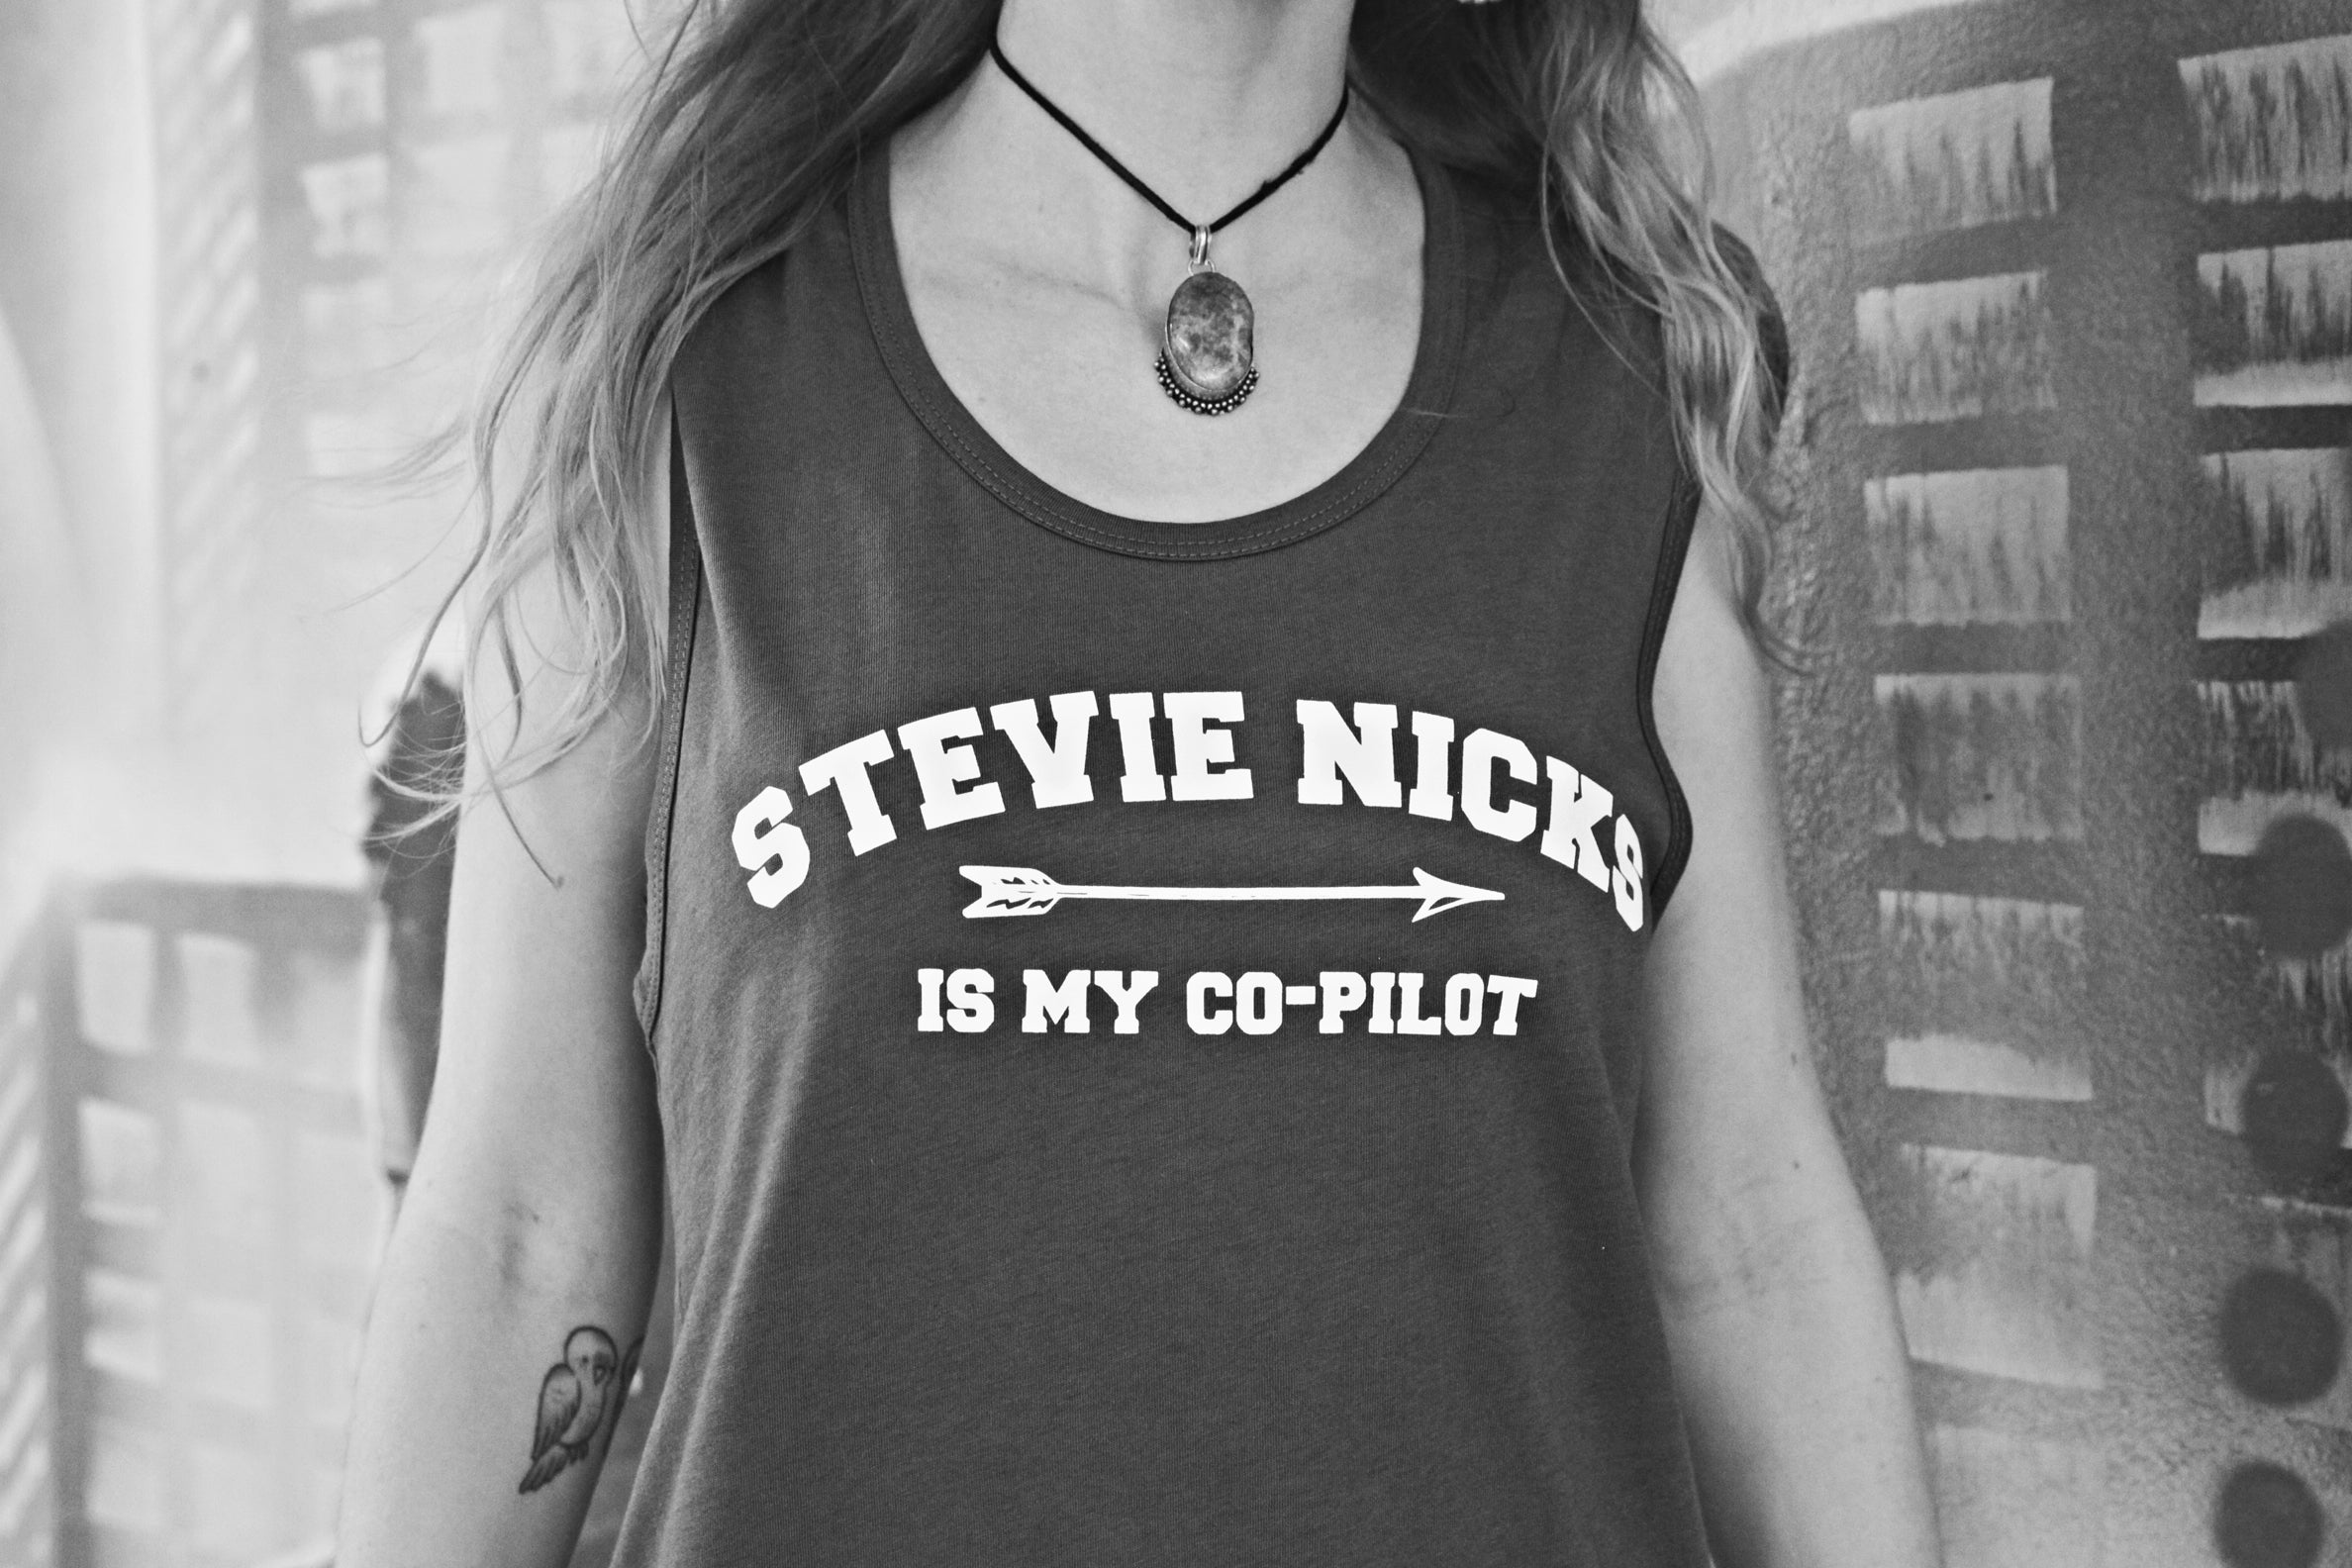 stevie nicks wild heart shirt